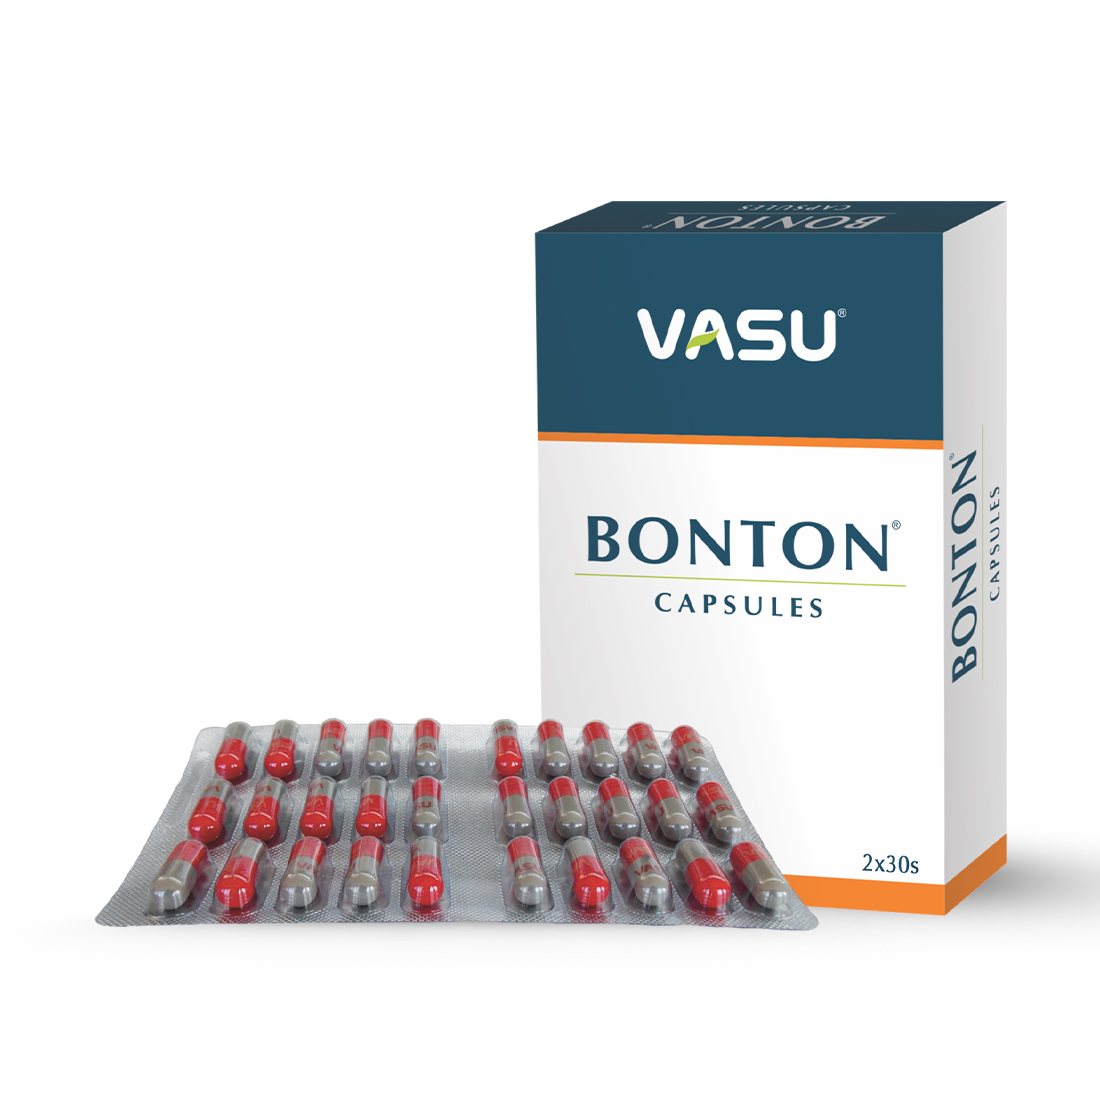 Buy Vasu Bonton Capsule at Best Price Online